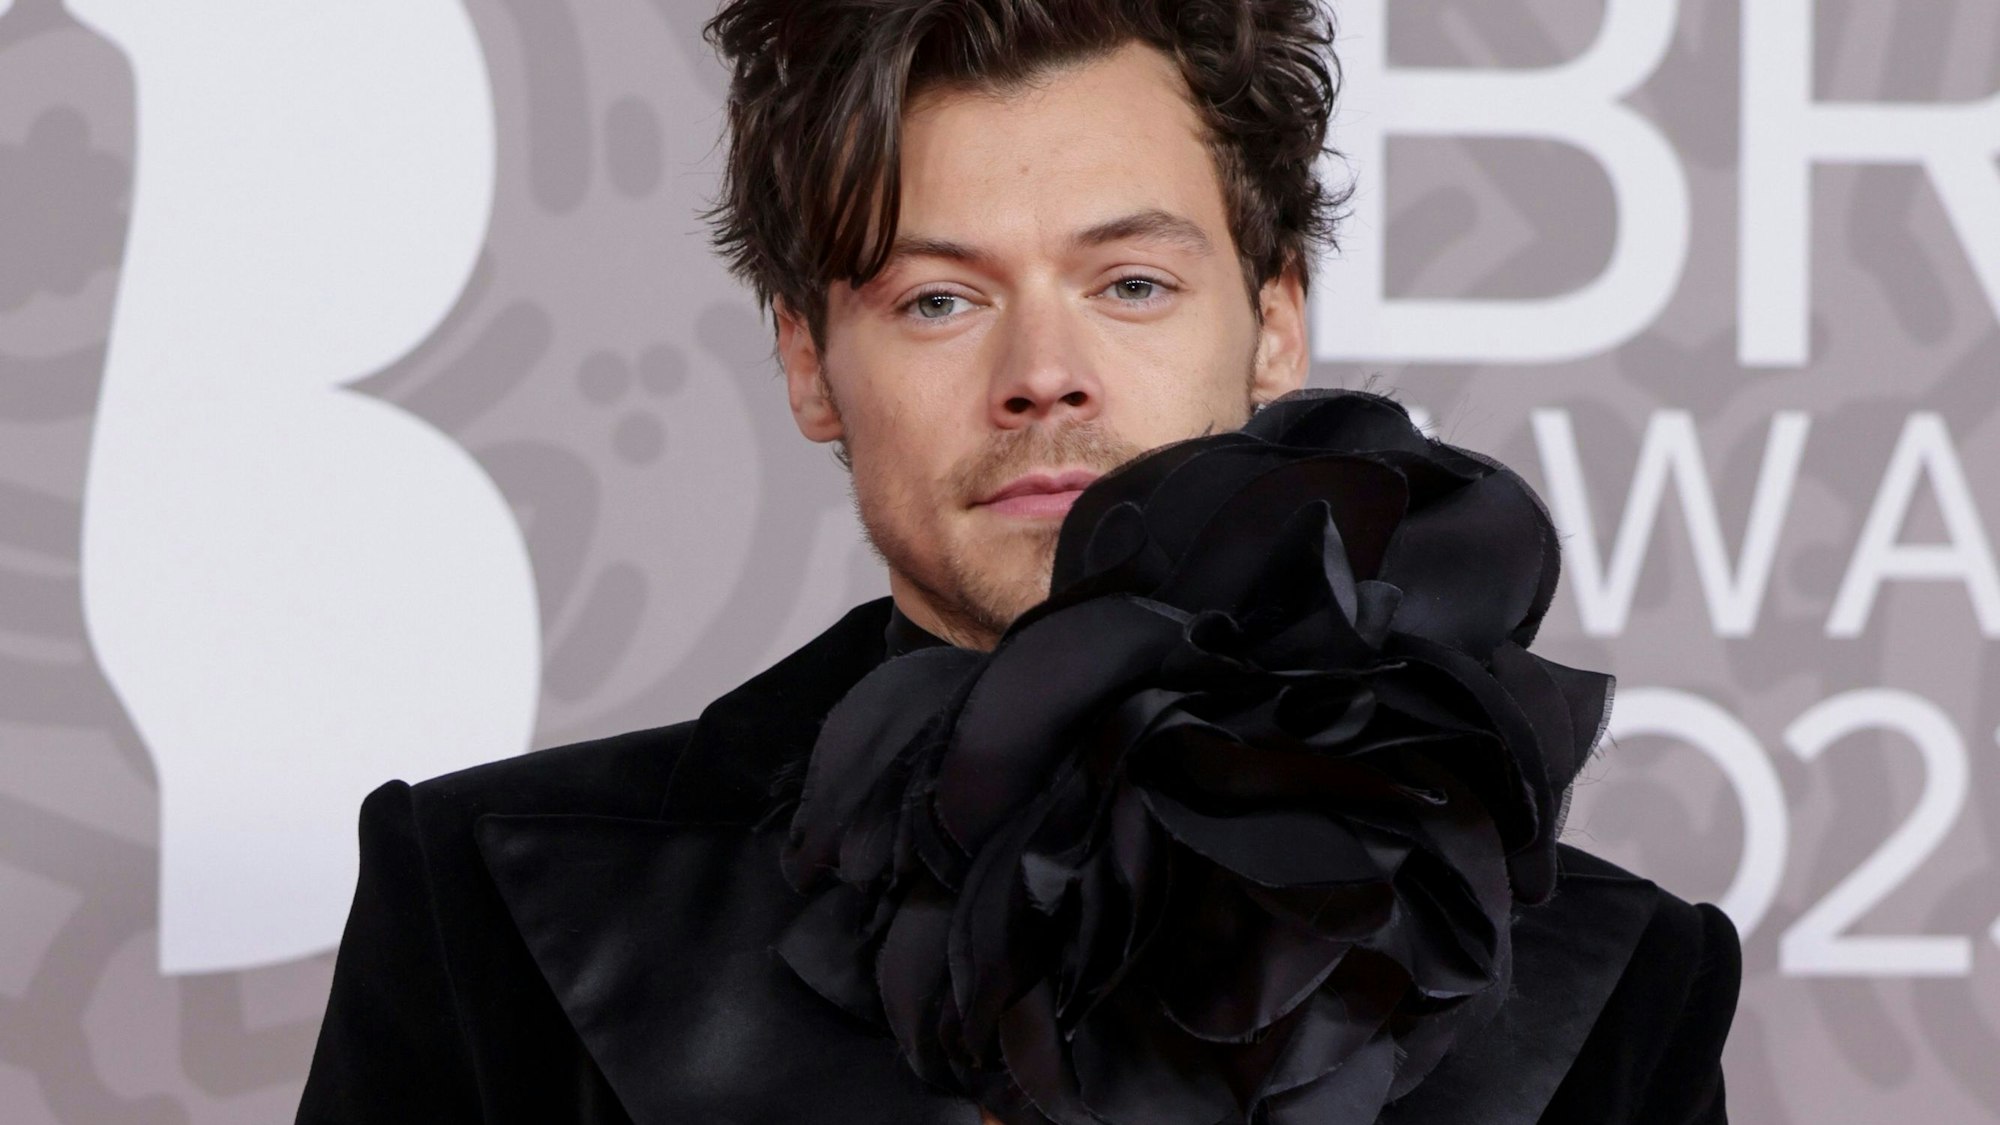 Sänger Harry Styles kommt ebenfalls in Schwarz zu den Brit Awards – und sieht dabei ungemein elegant aus.